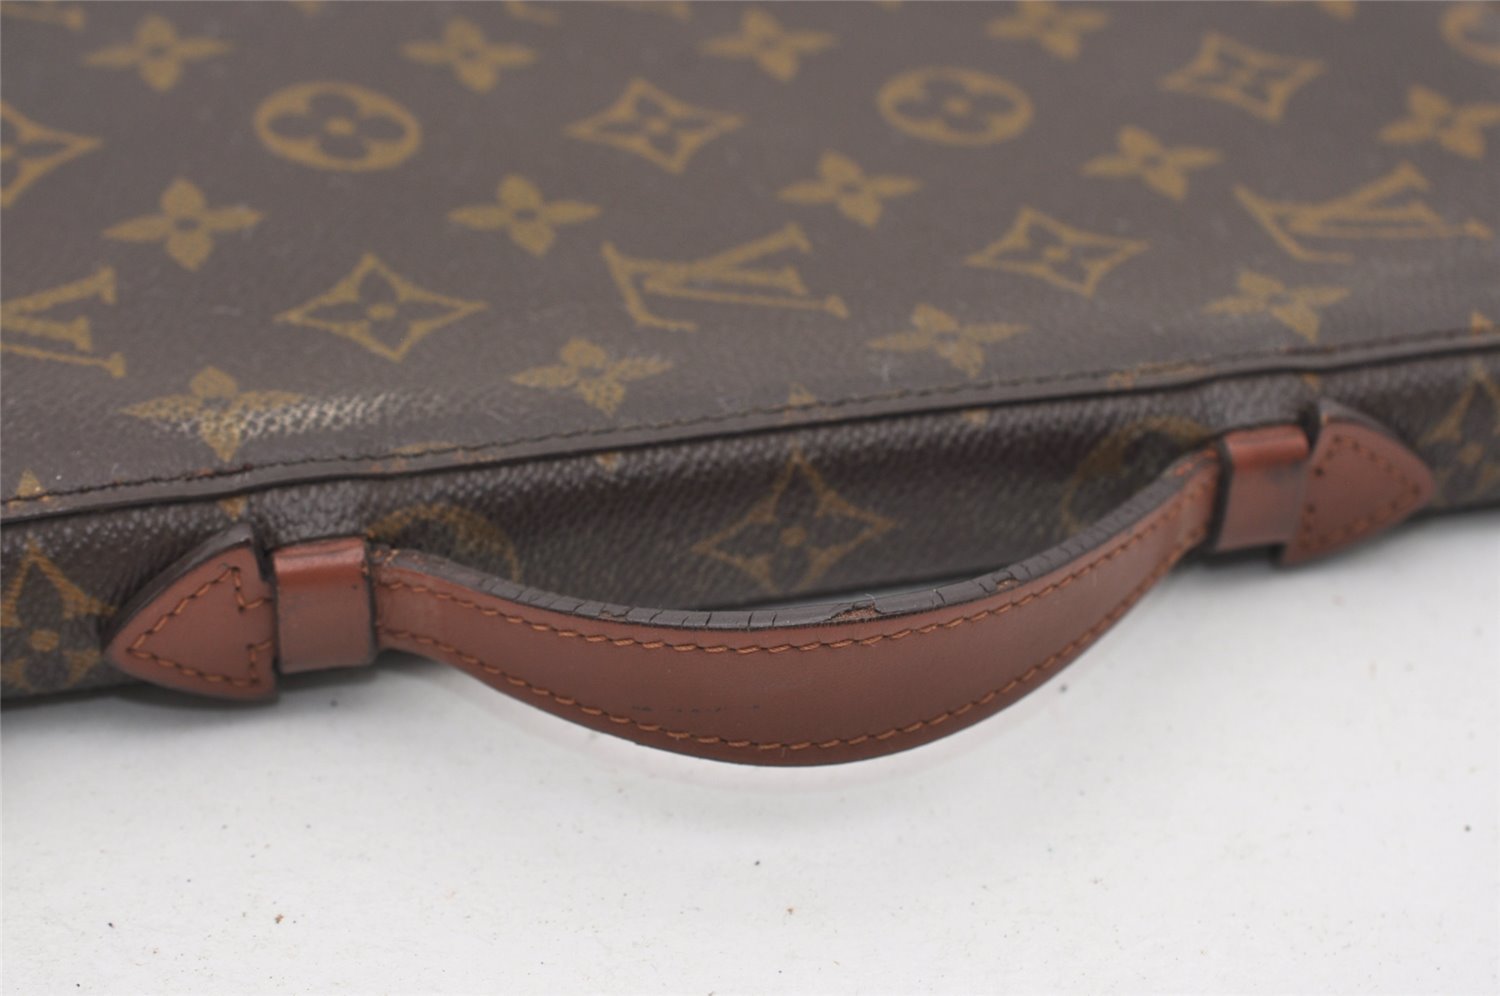 Authentic Louis Vuitton Monogram Poche Escapade Travel Case M60113 LV 2109J